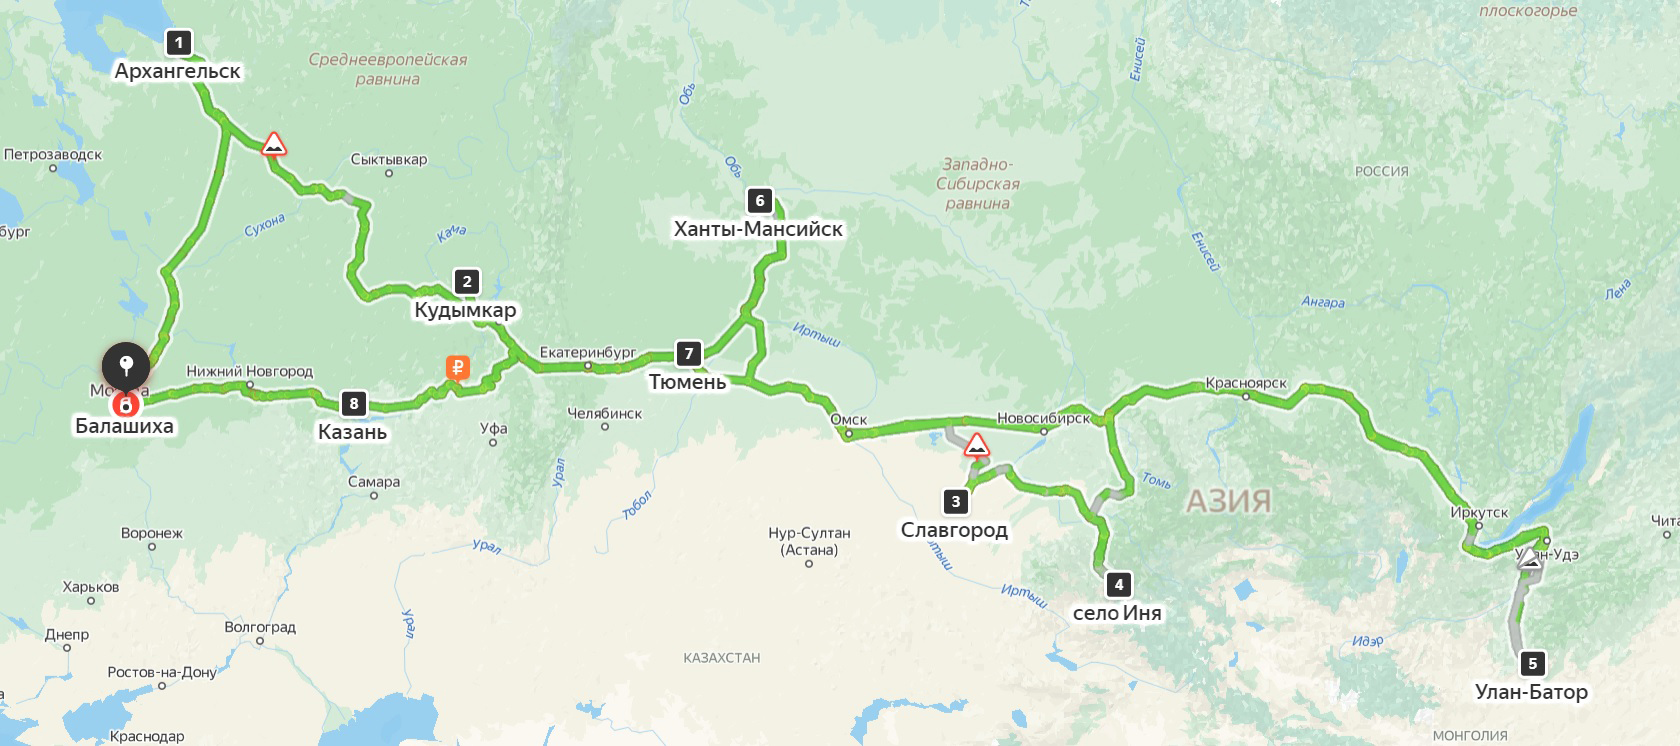 Маршрут летнего путешествия 2022 года проходил через половину страны и был длиннее межсервисного пробега в 15 000 км. Источник: «Яндекс-карты»